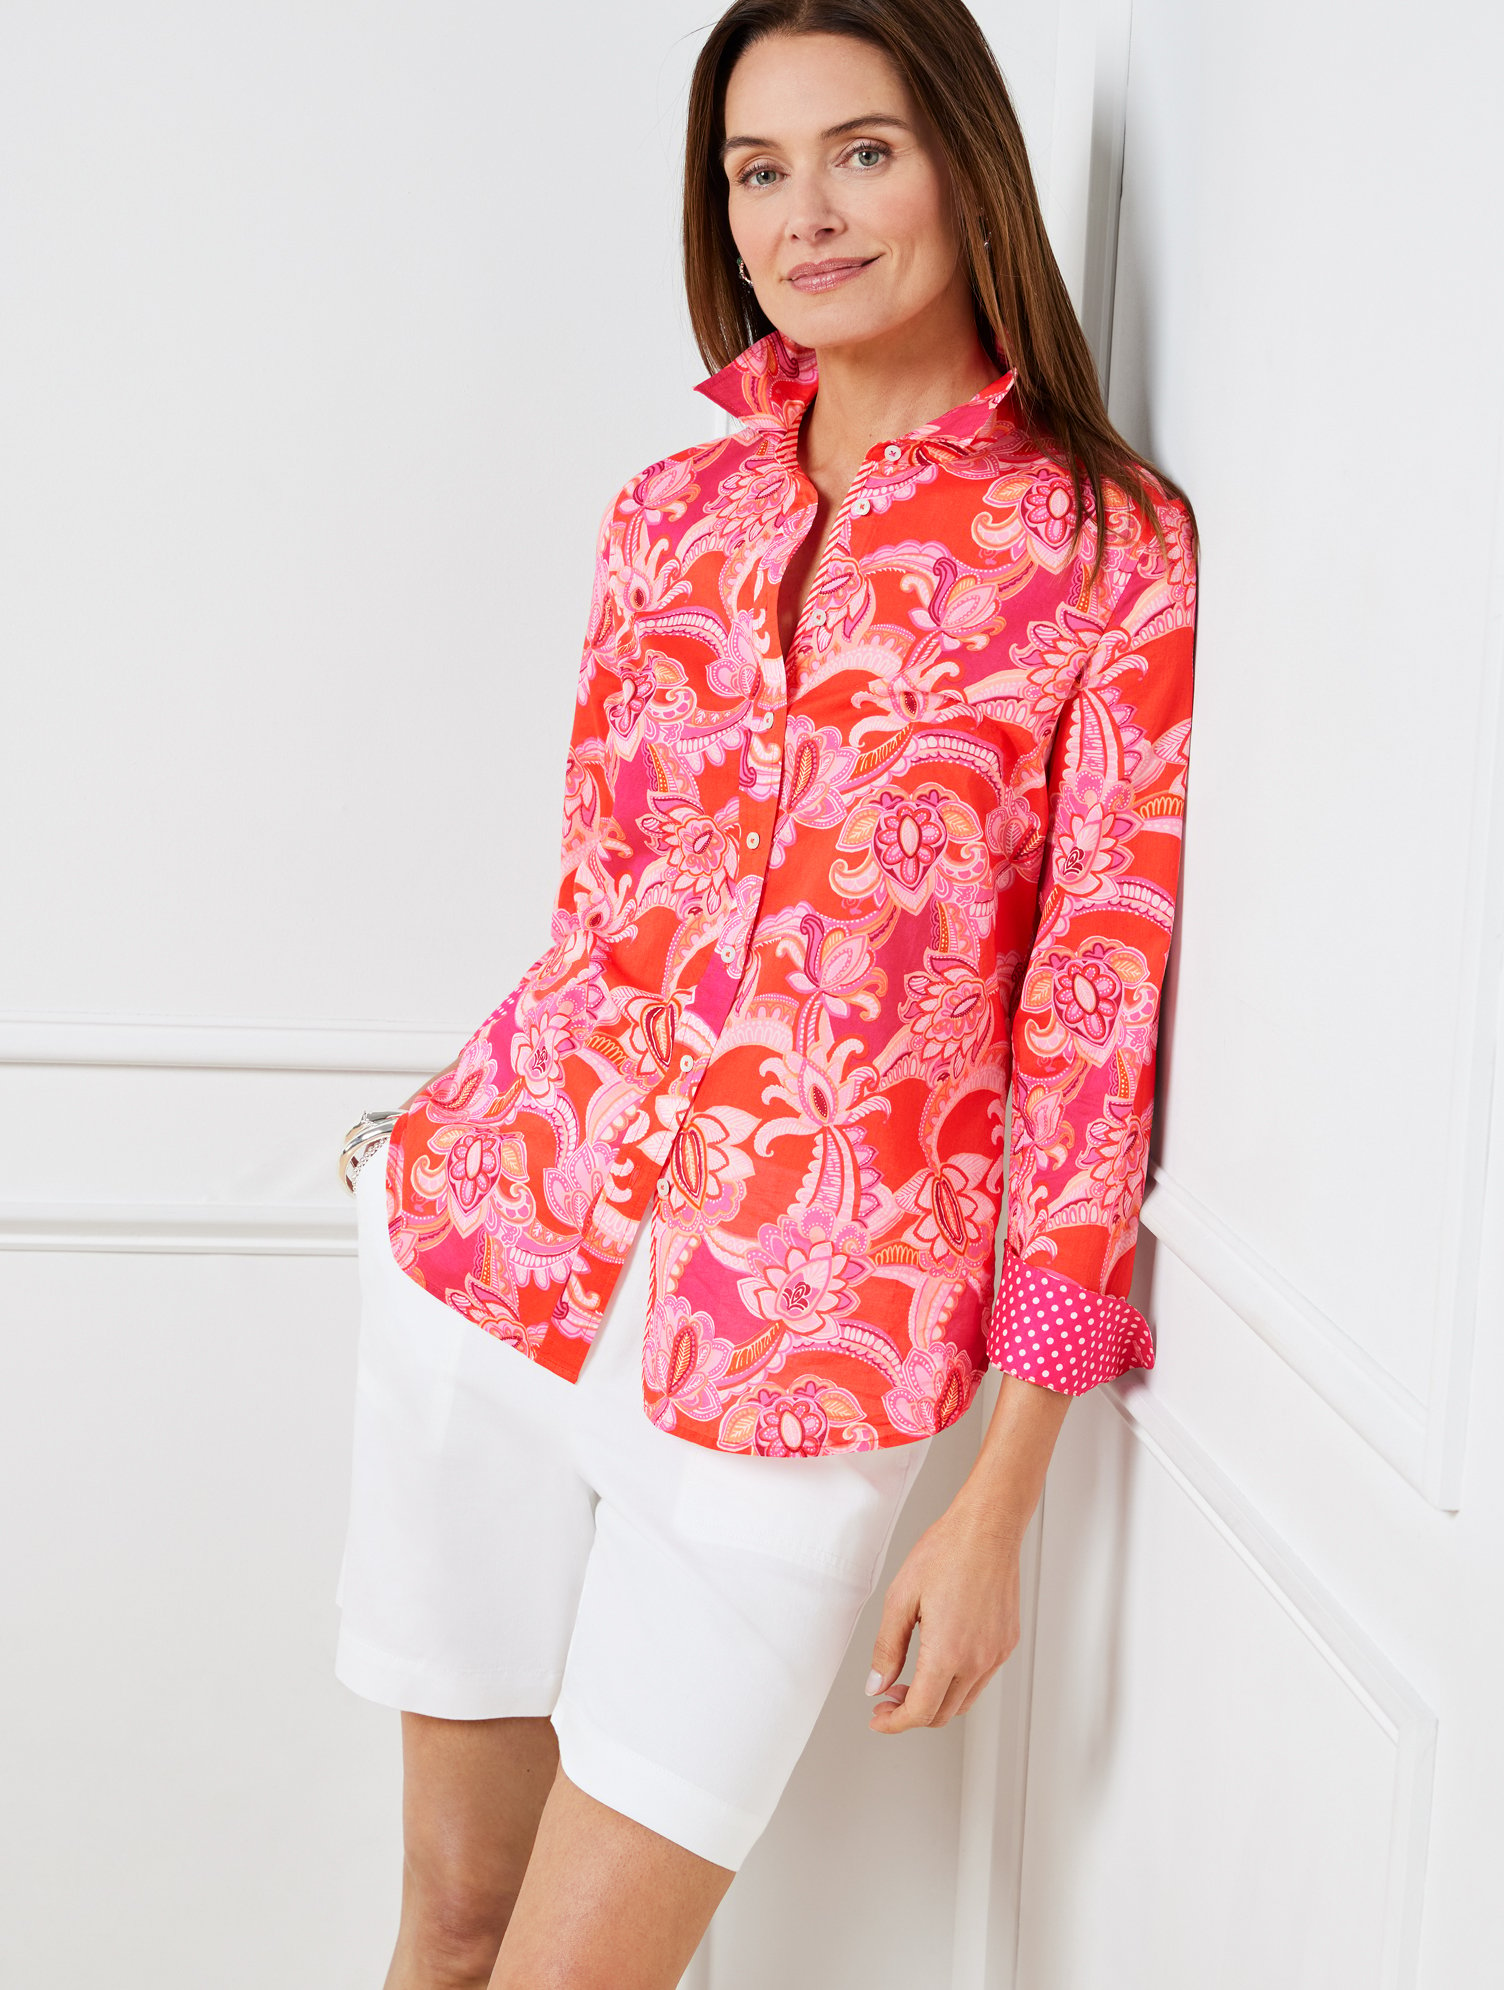 Talbots Cotton Button Front Shirt - Charming Floral - Orange/pink Geranium - 1x  In Orange,pink Geranium